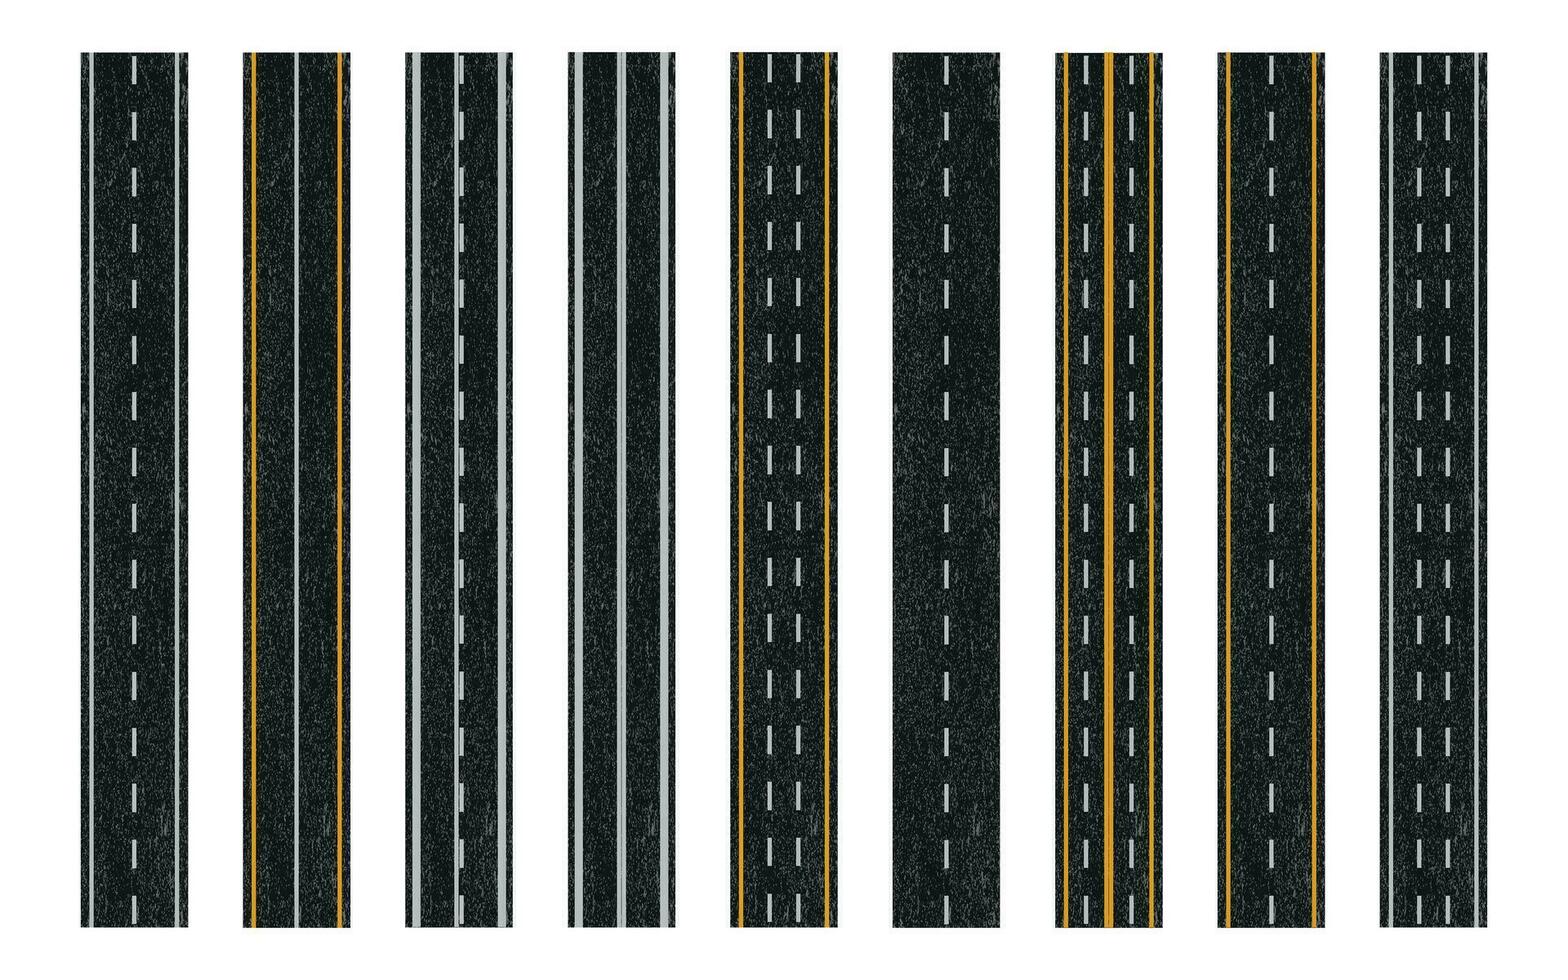 asfalt väg textur med väg märkning, asfalterad väg med skilje remsor vektor illustration.